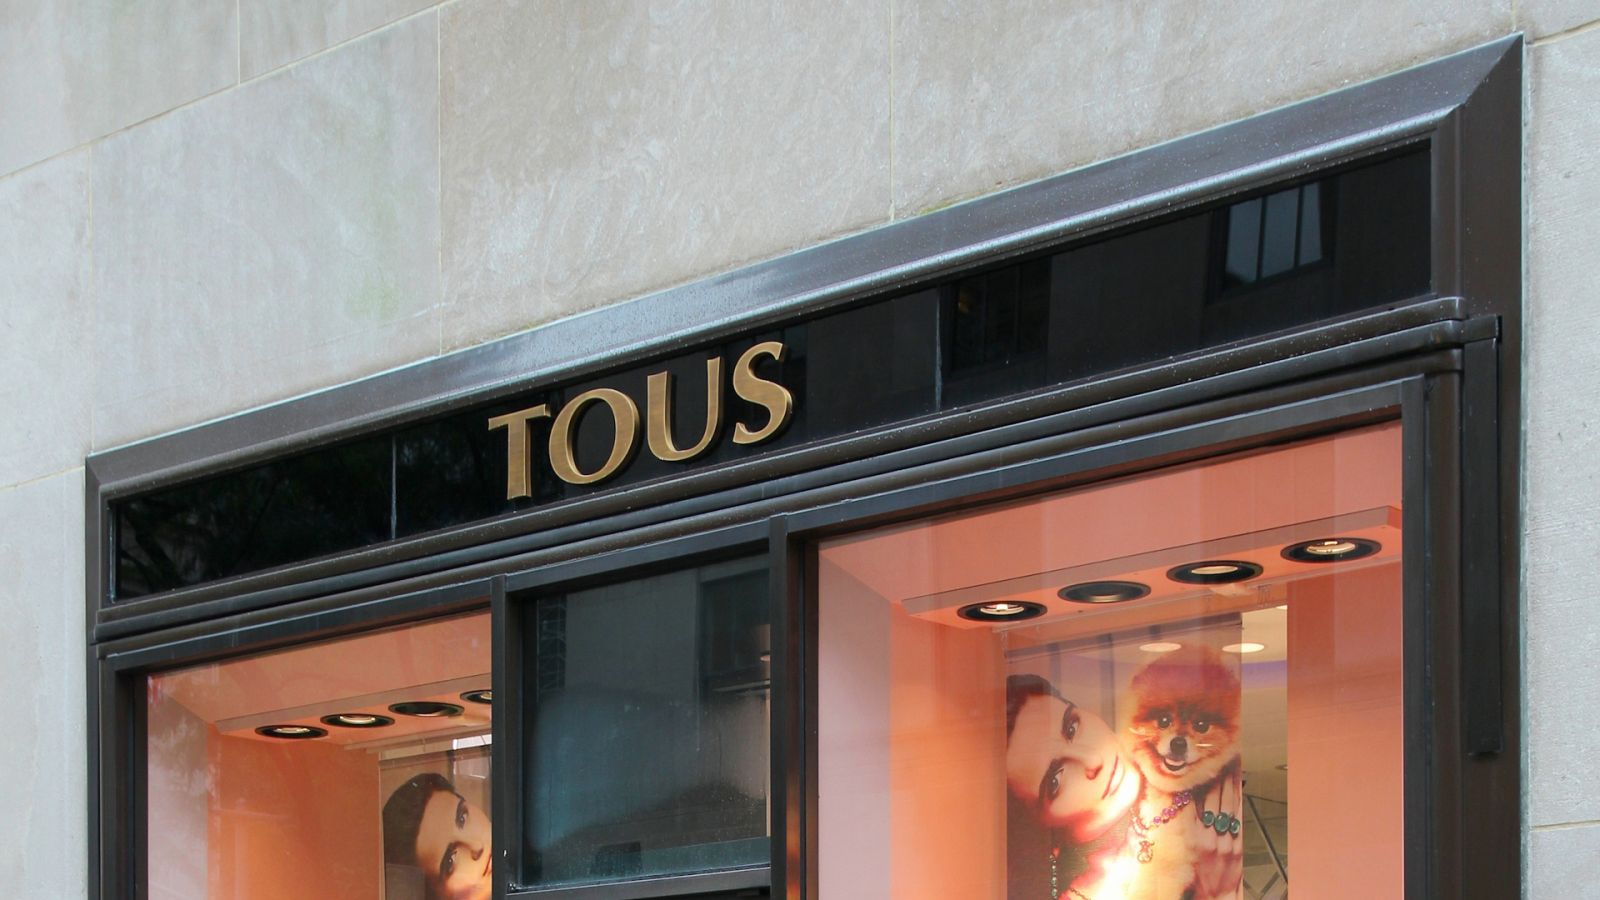 La marca Tous es denunciada por supuesta estafa y falsedad - RTVE.es